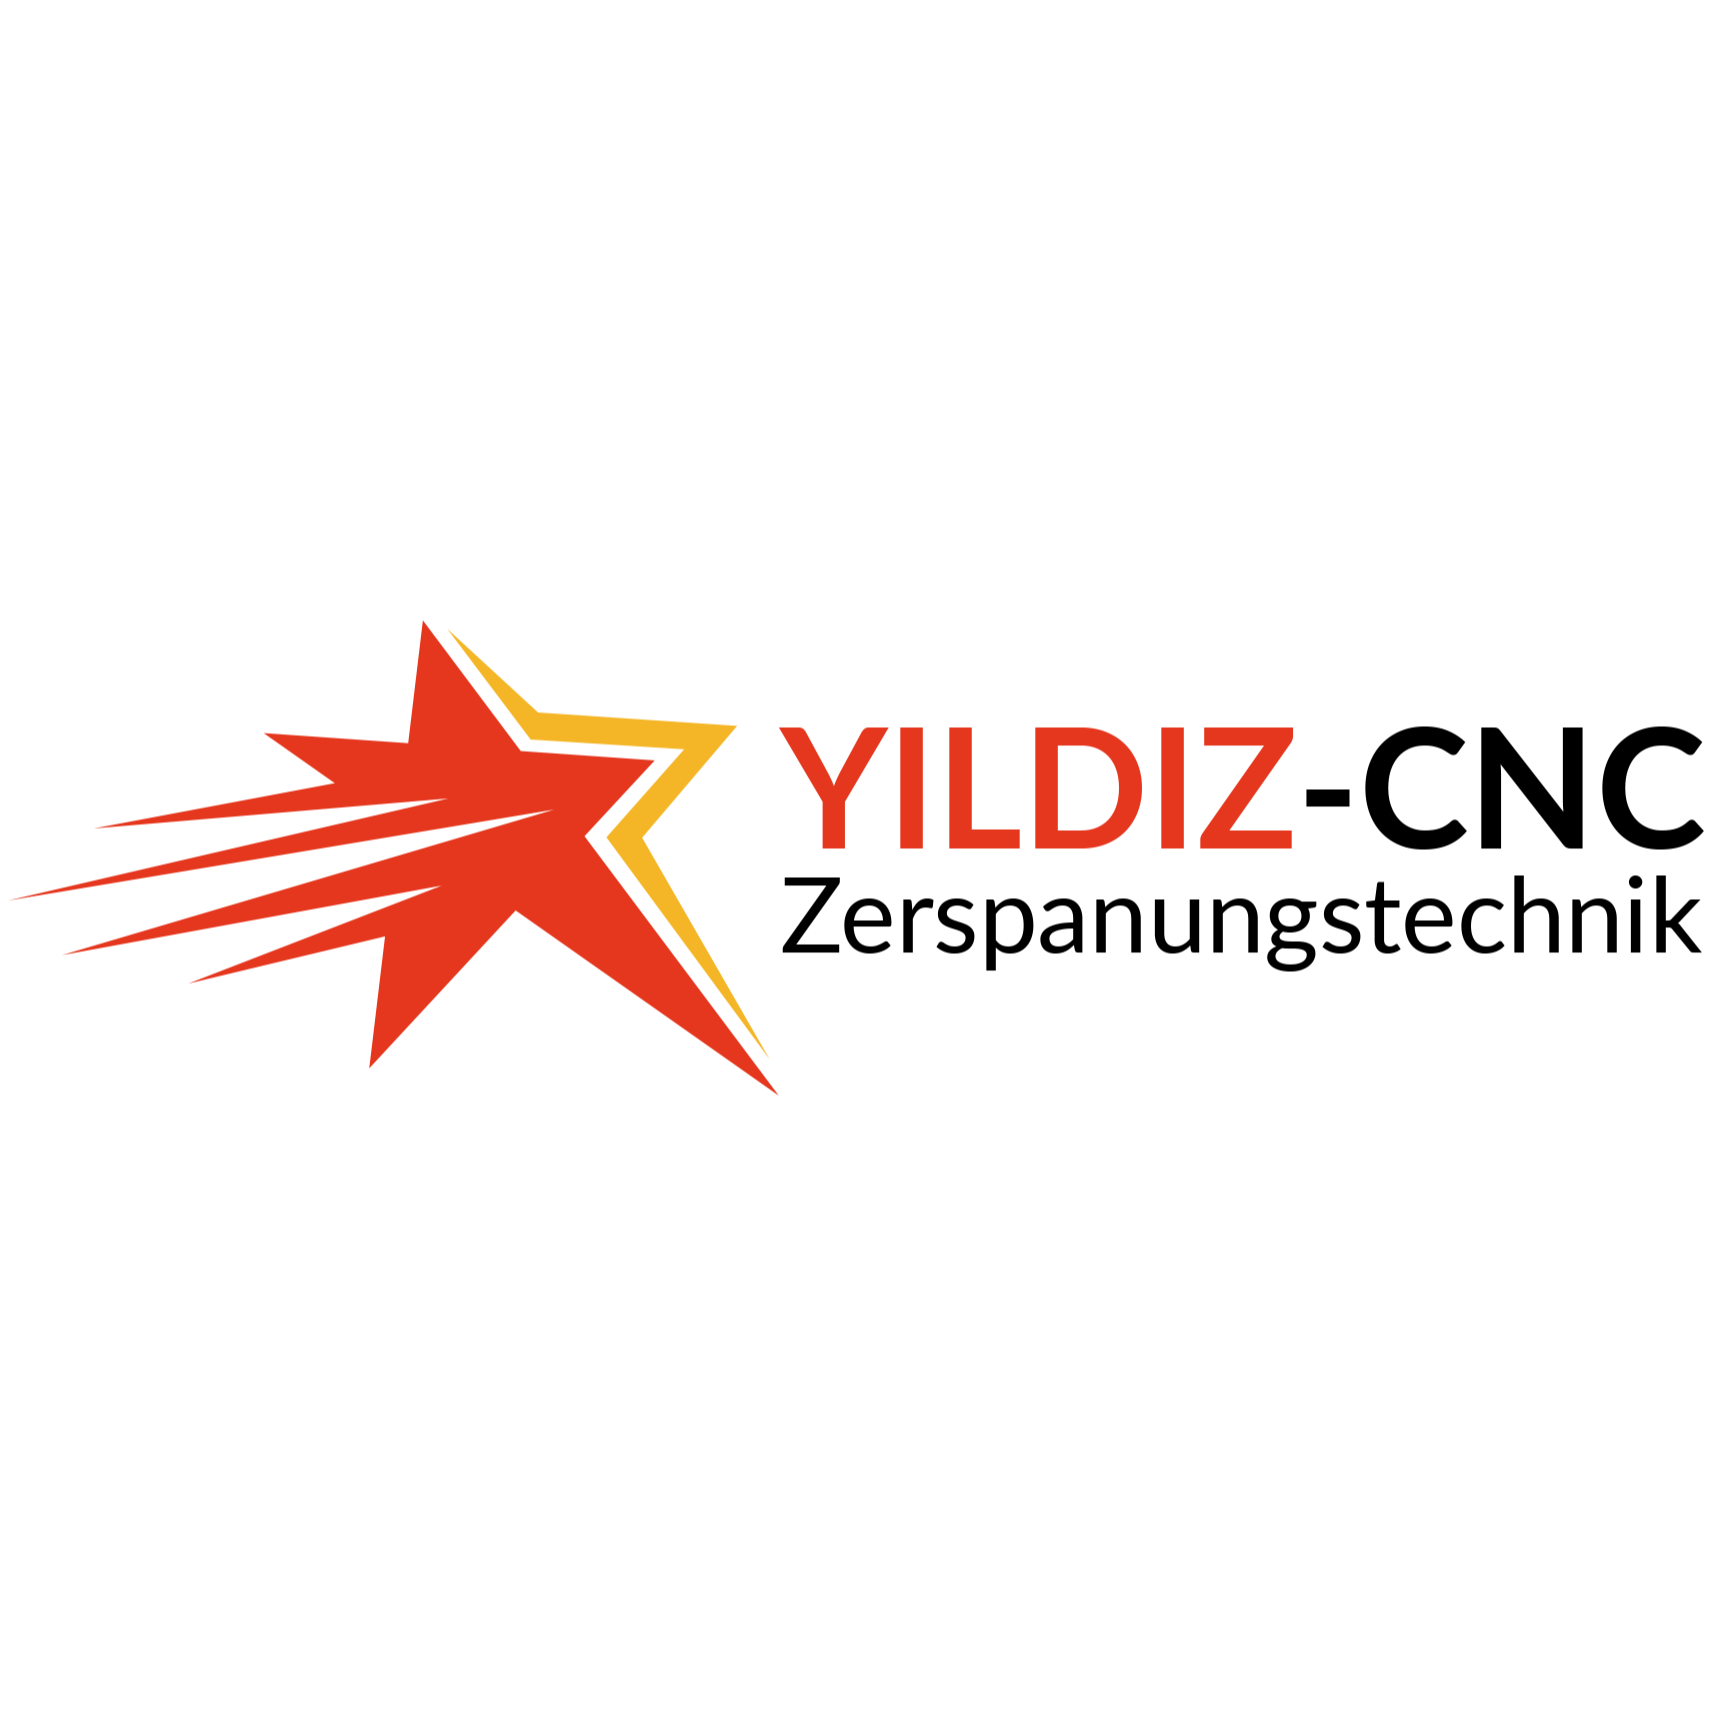 Yildiz-CNC Zerspanungstechnik in Hüttenberg - Logo